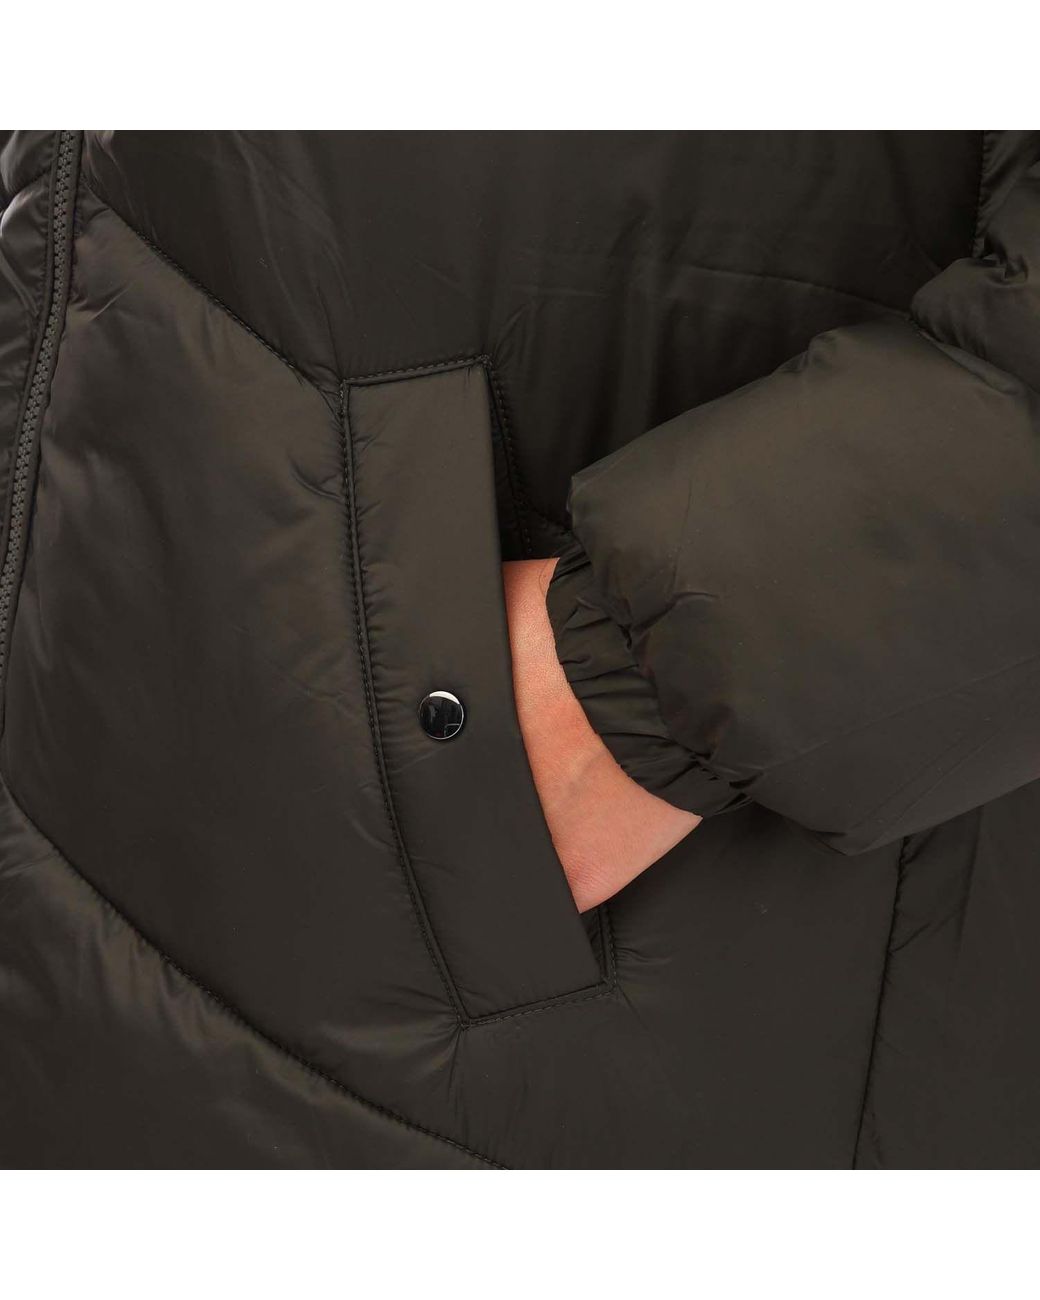 Vero Moda Uppsala Long Coat in Black | Lyst UK